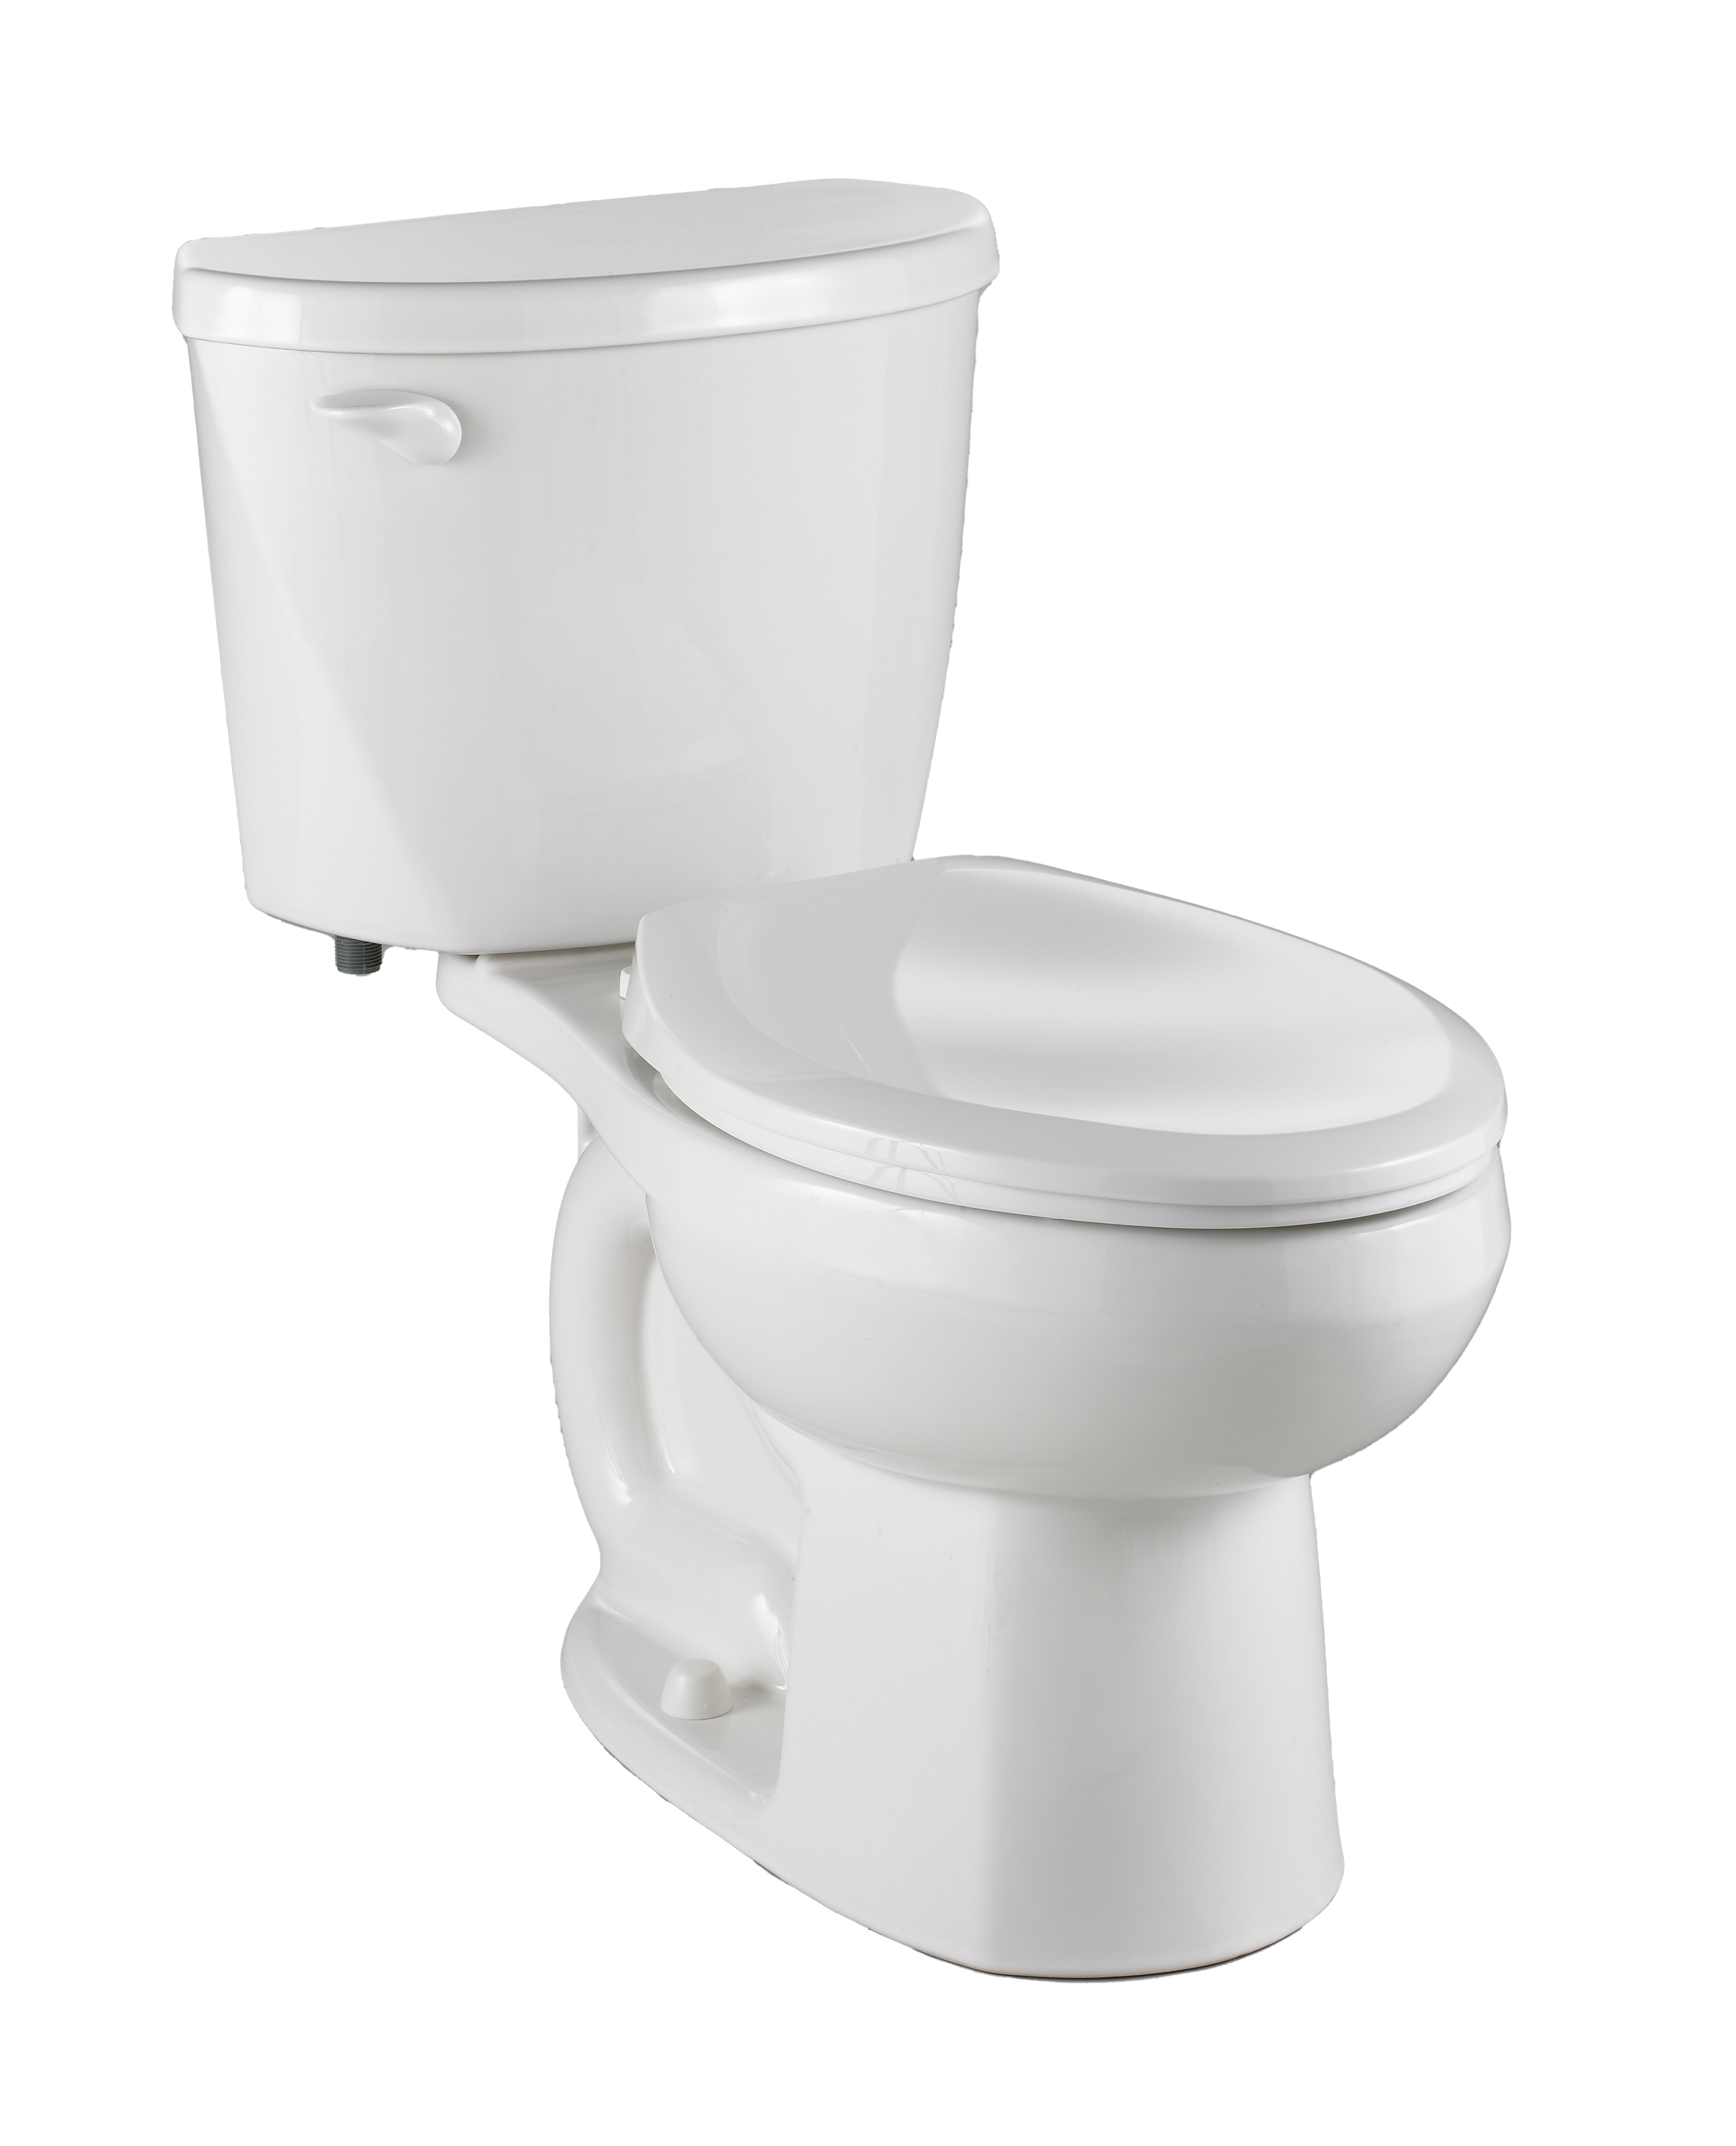 Toilette Evolution 2, 2 pièces, 1,28 gpc/4,8 lpc, à cuvette allongée à hauteur de chaise, sans siège